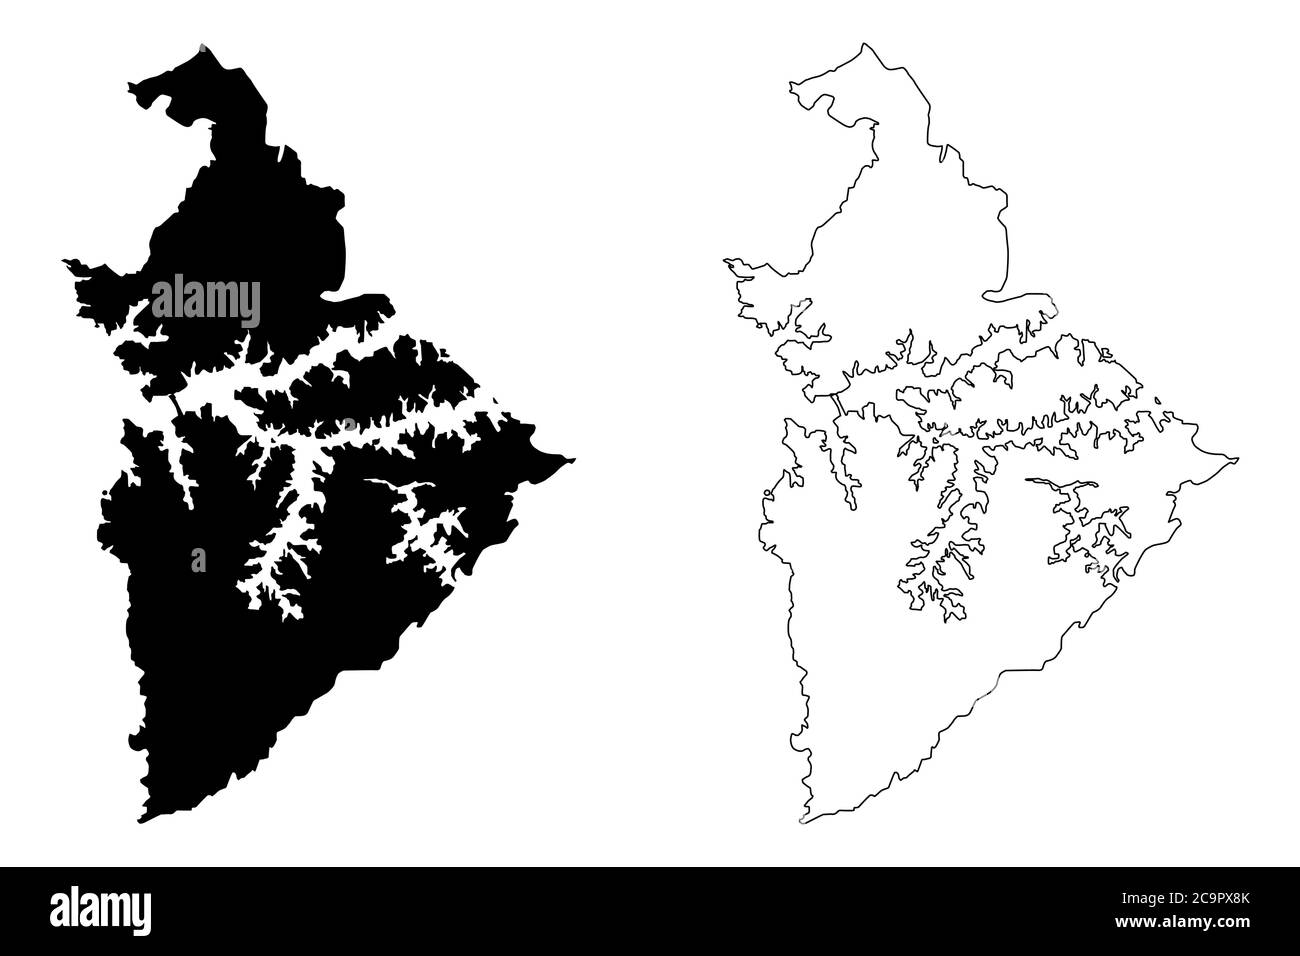 Sao Bernardo do campo City (Repubblica Federativa del Brasile, Stato di San Paolo) mappa illustrazione vettoriale, abbozzamento scrimbibile Città di Sao Bernardo do campo mappa Illustrazione Vettoriale